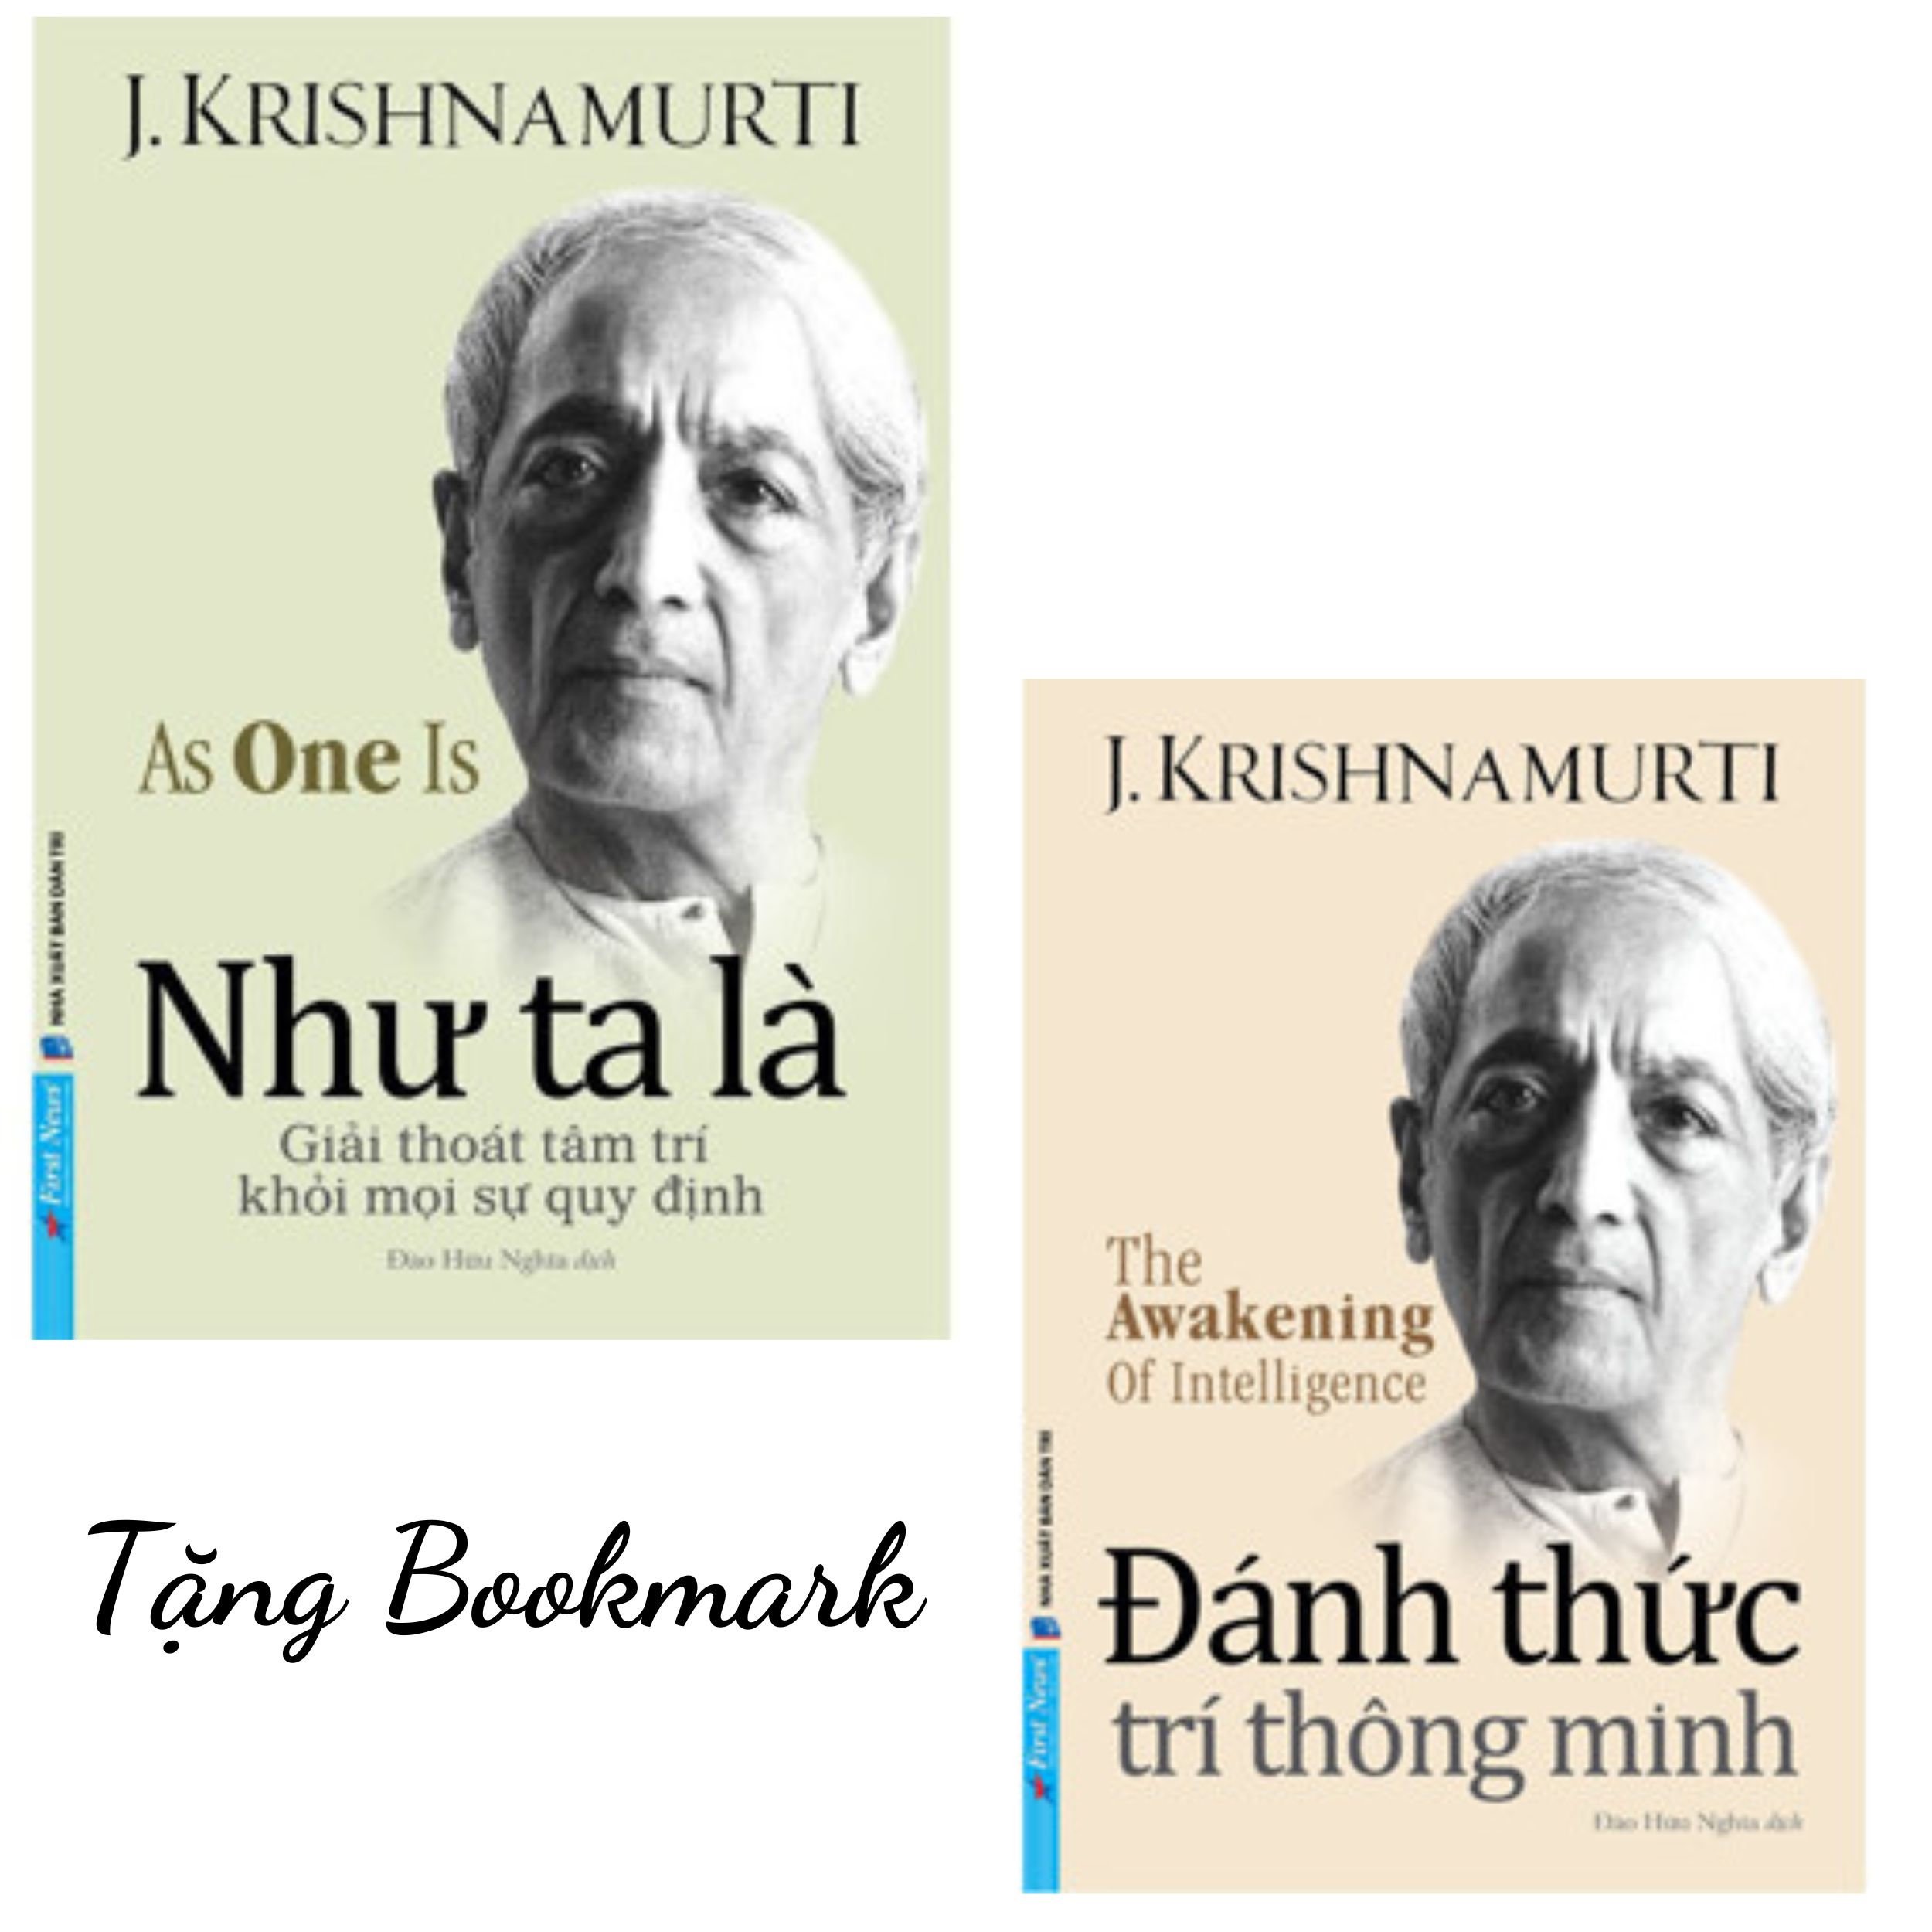 Sách - Combo 2 cuốn Đánh Thức Trí Thông Minh + Như Ta Là - J. Krishnamurti (FN) (Tặng Bookmark)